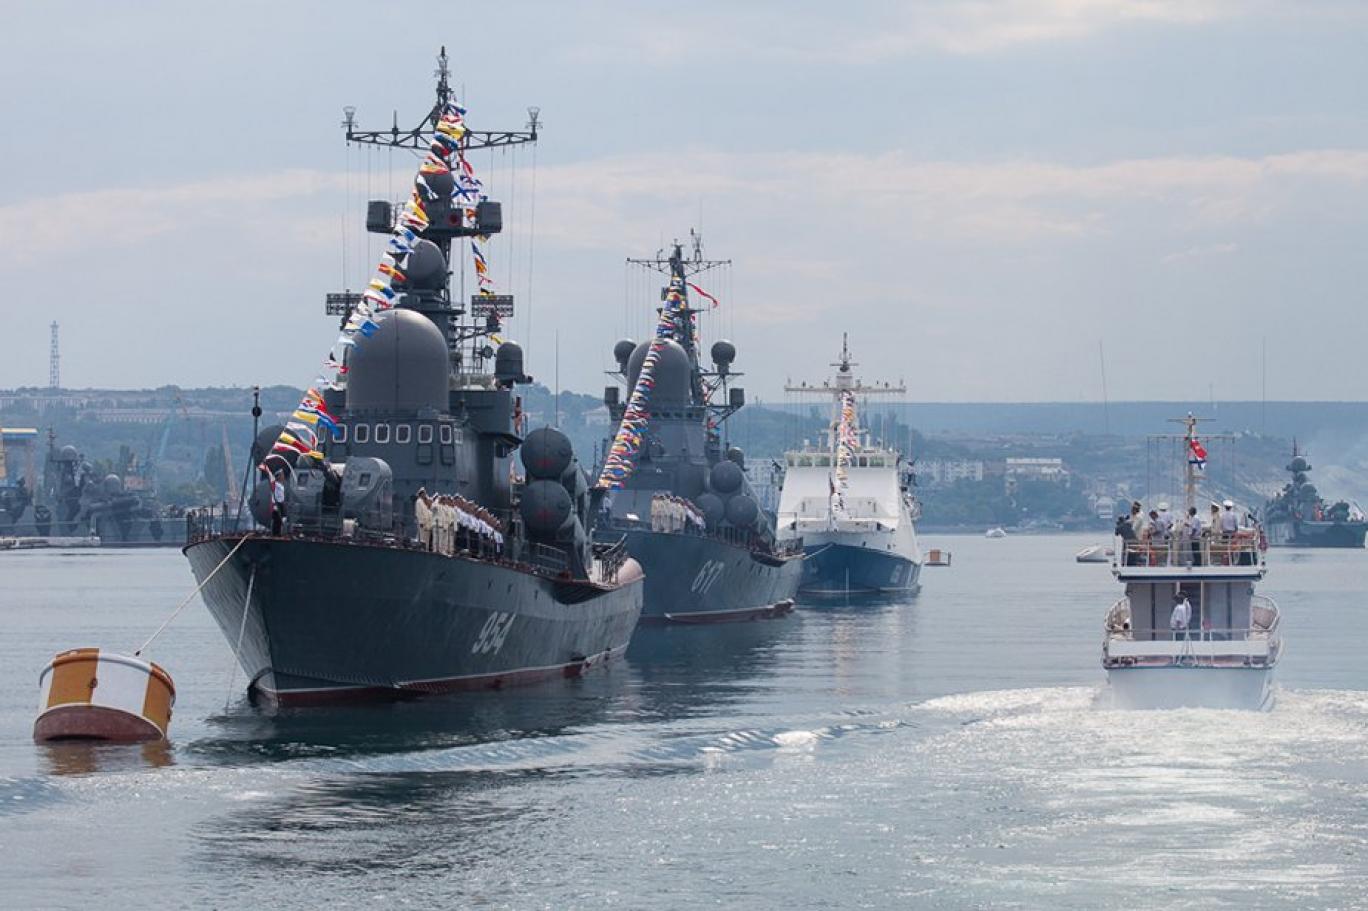 روسيا تعتقل بحاراً بعد مزاعم عن "مؤامرة" استهداف سفن حربية